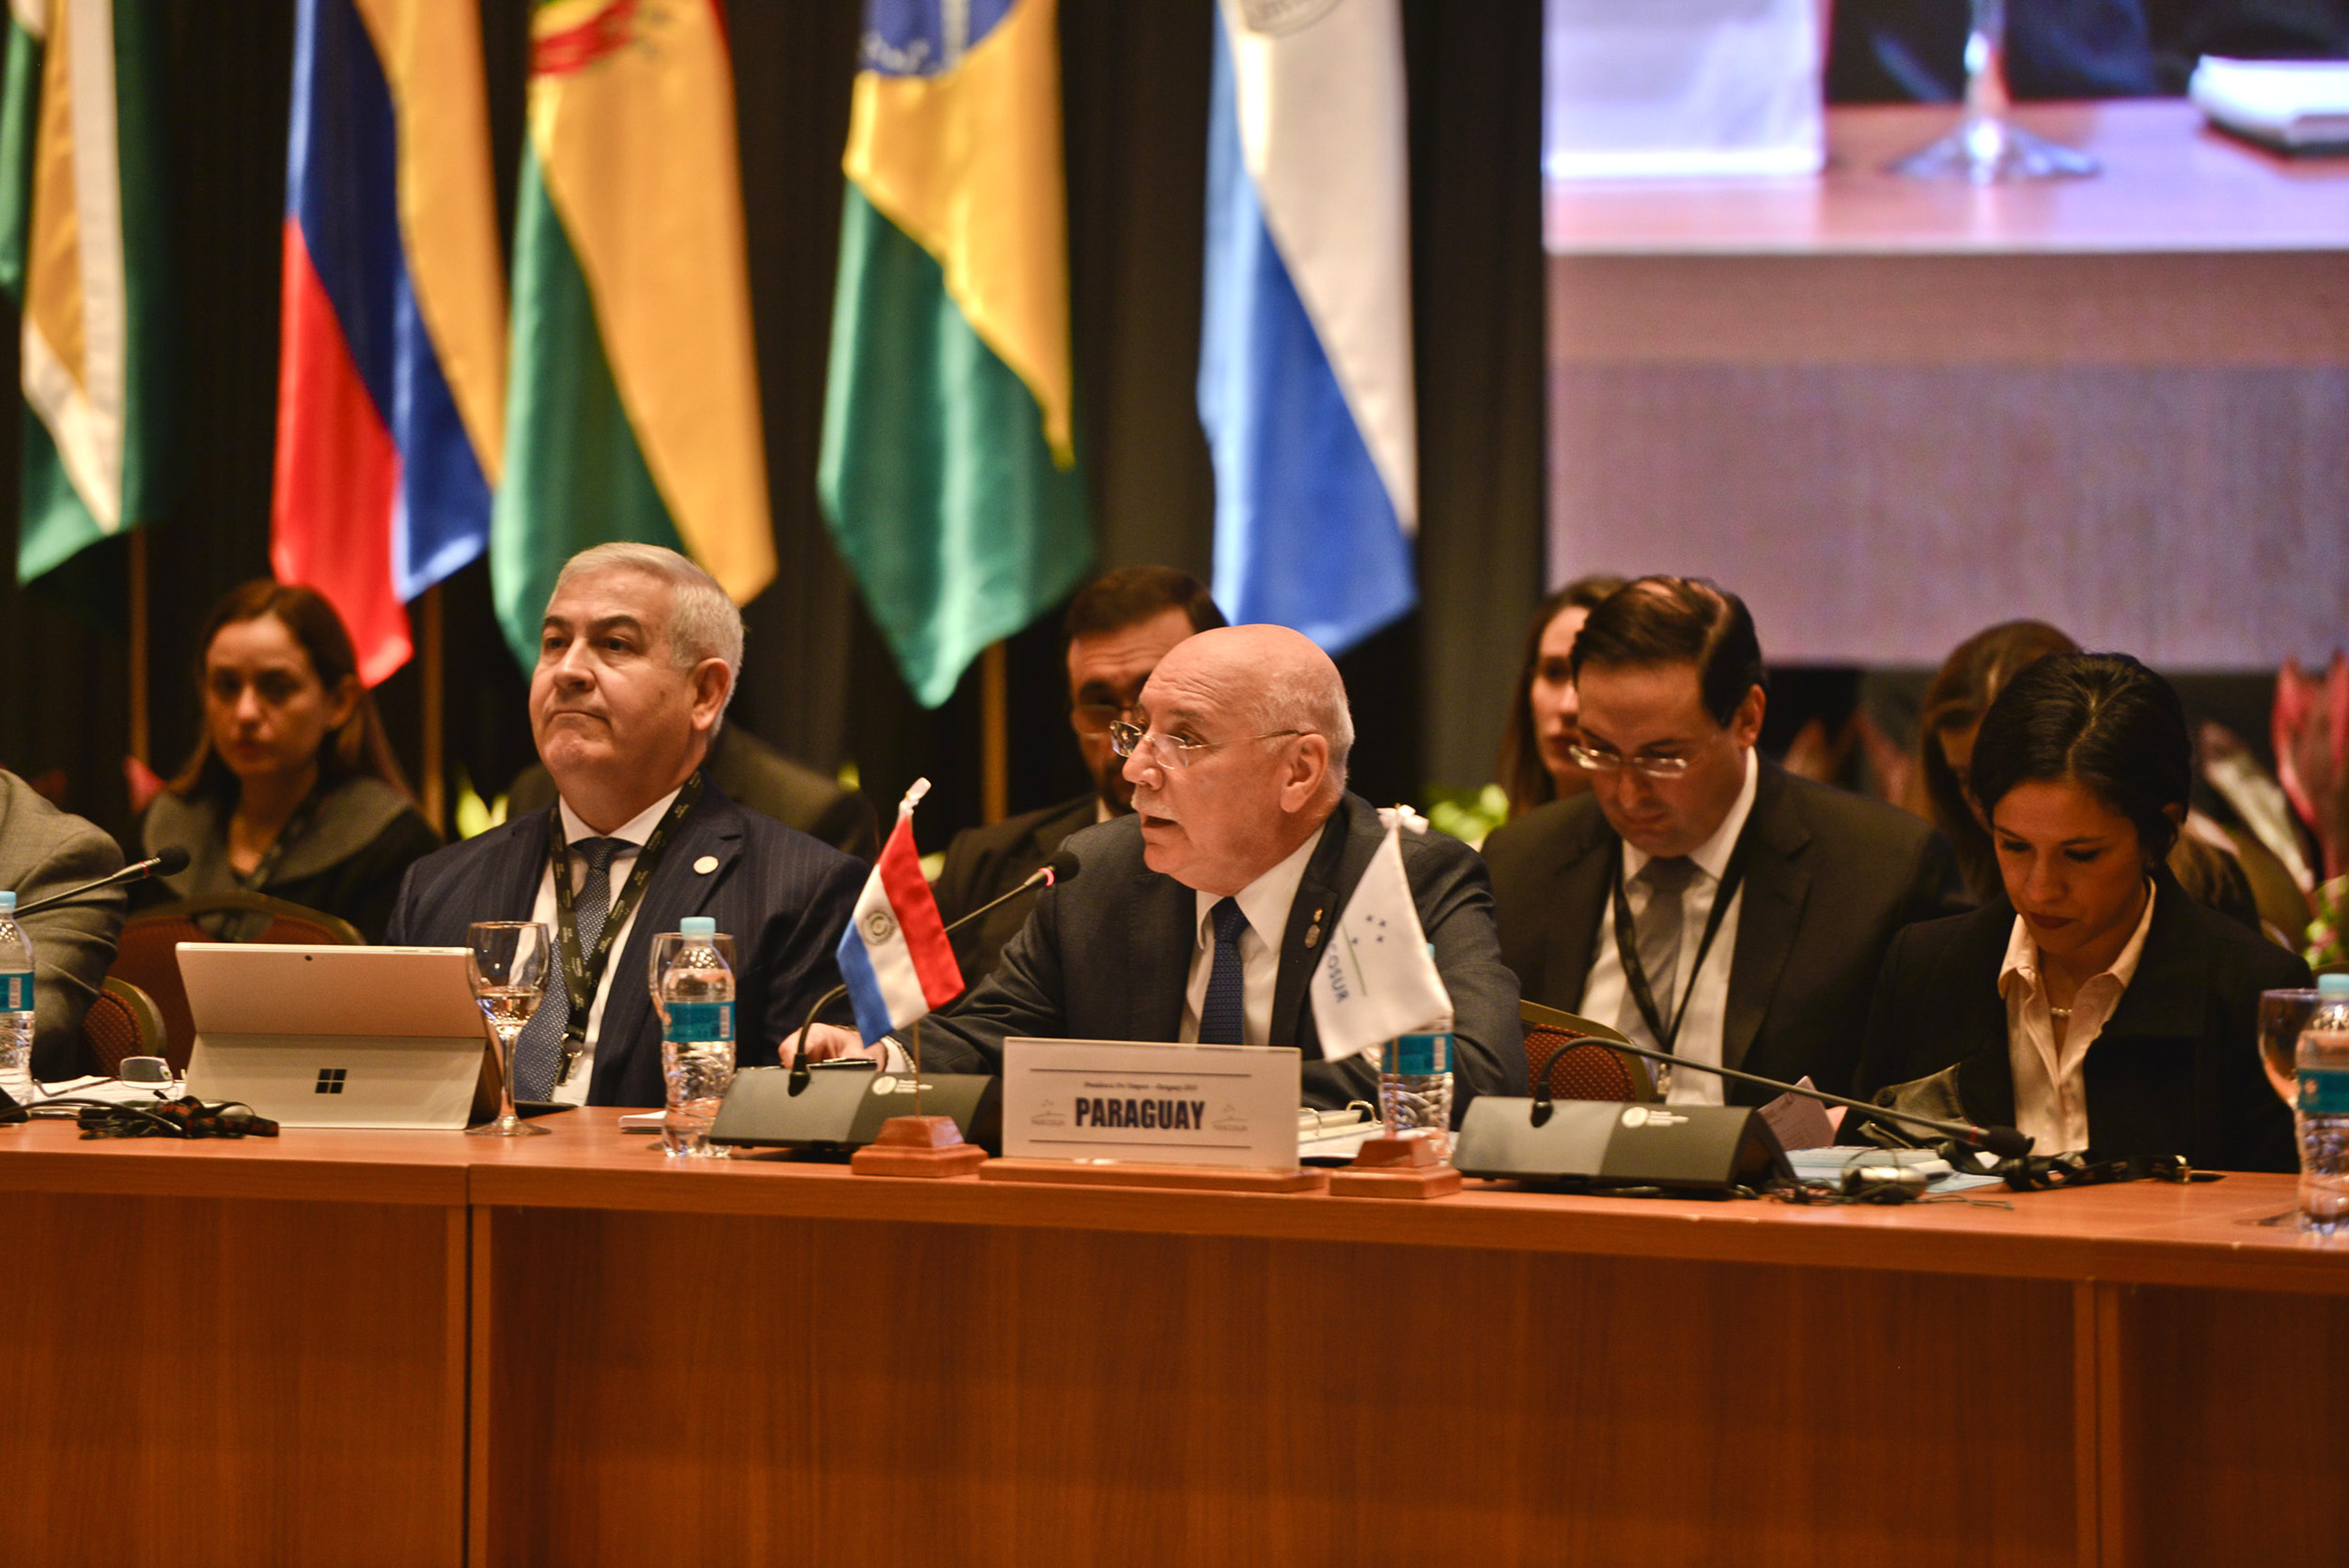 Cancilleres del MERCOSUR destacaron labor de la PPT del Paraguay en la consolidación del proceso de integración del Mercosur